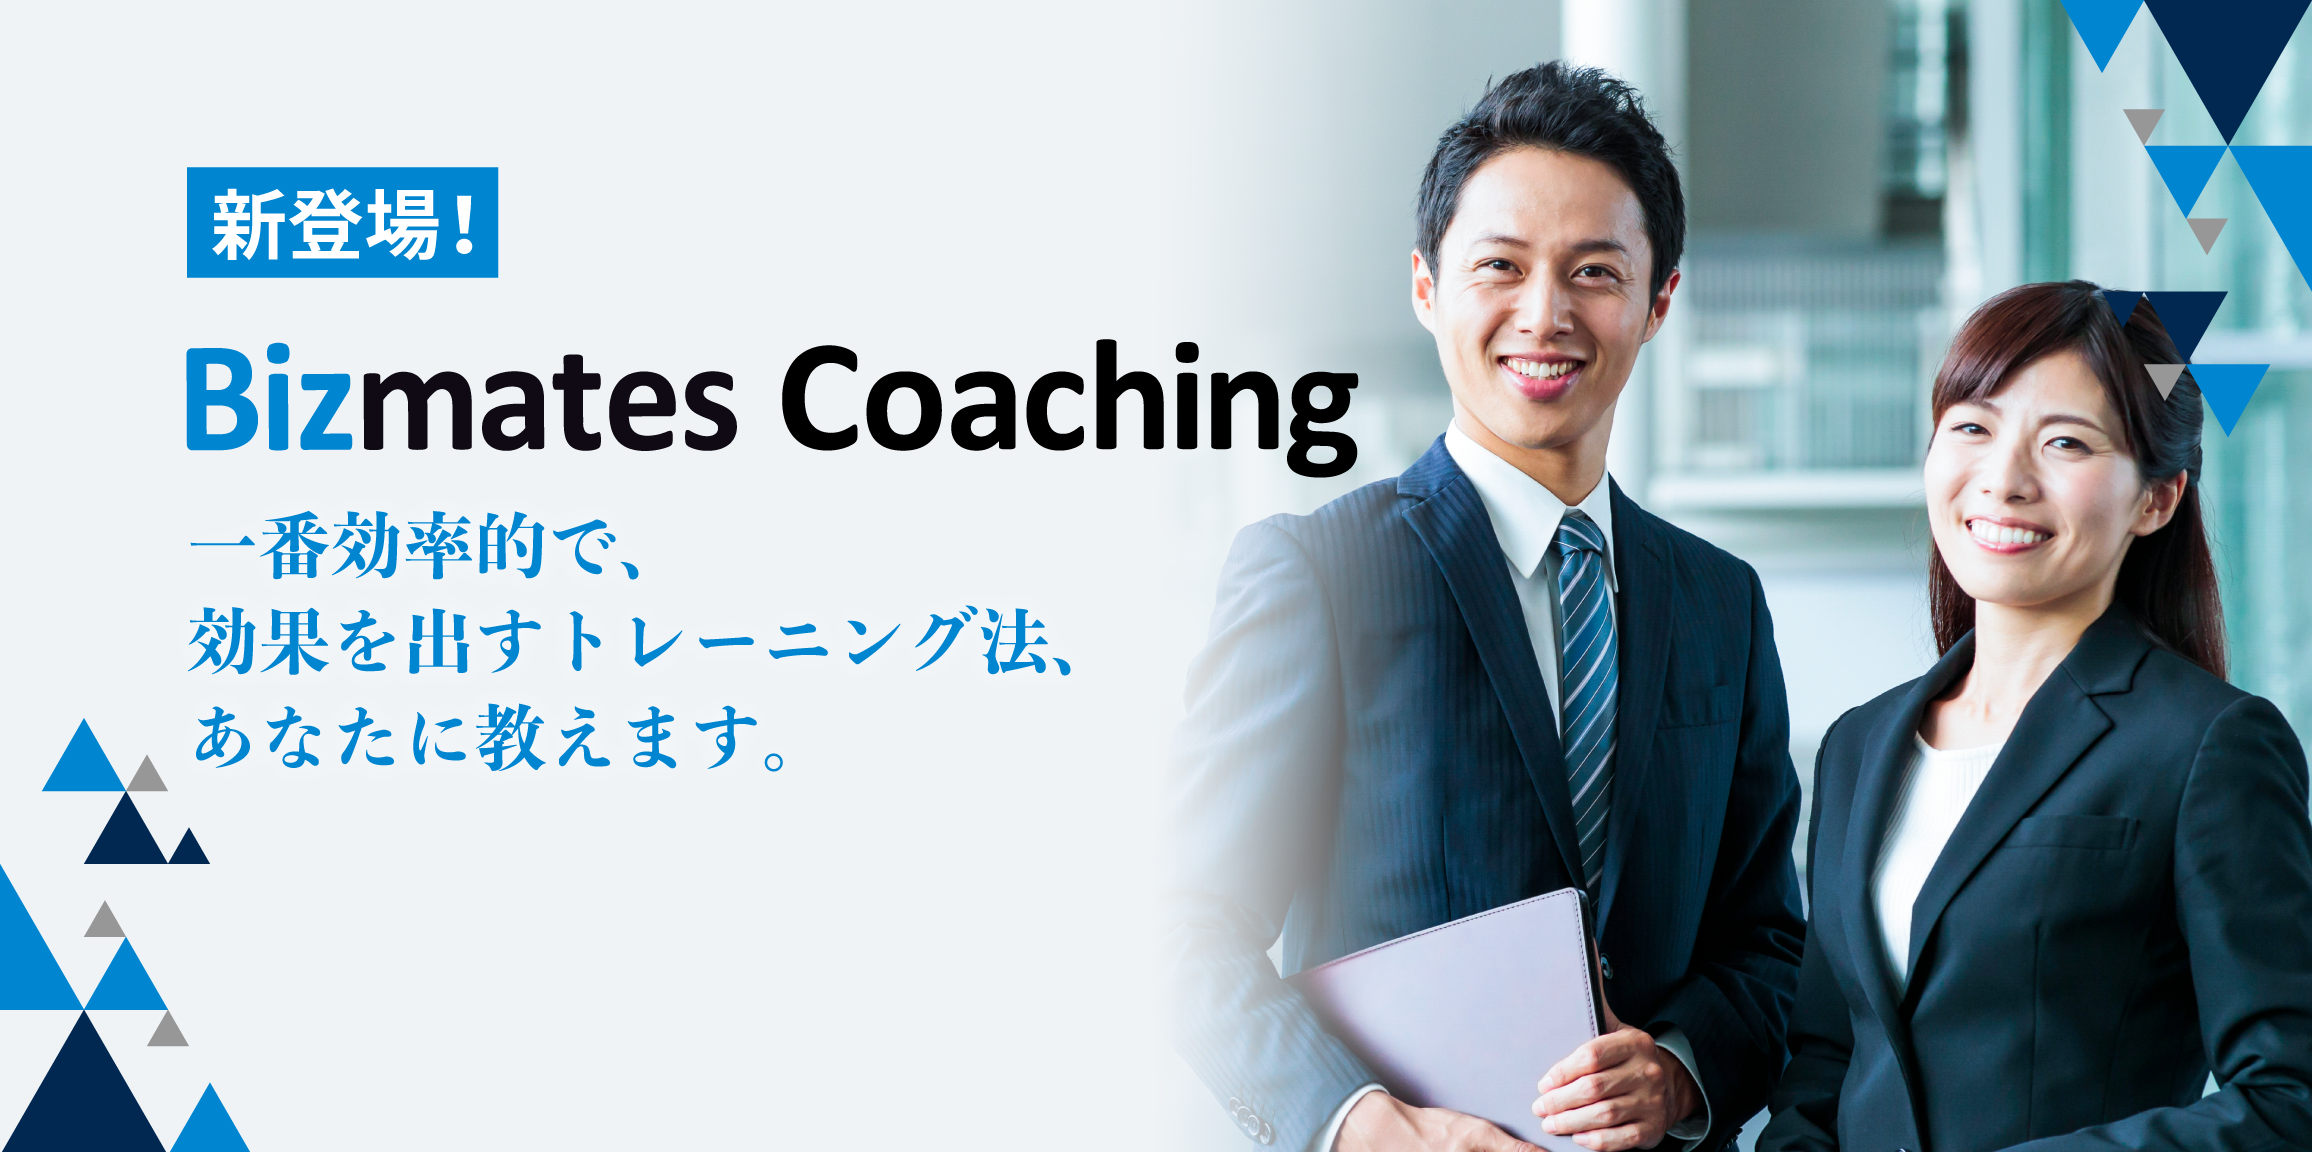 Bizmatesオンラインレッスンの学習効果を最大化させる本格的コーチングサービス『Bizmates Coaching』を提供開始 〜日本人専任コンサルタントと二人三脚で、グローバルに活躍するビジネスパーソンを目指す〜